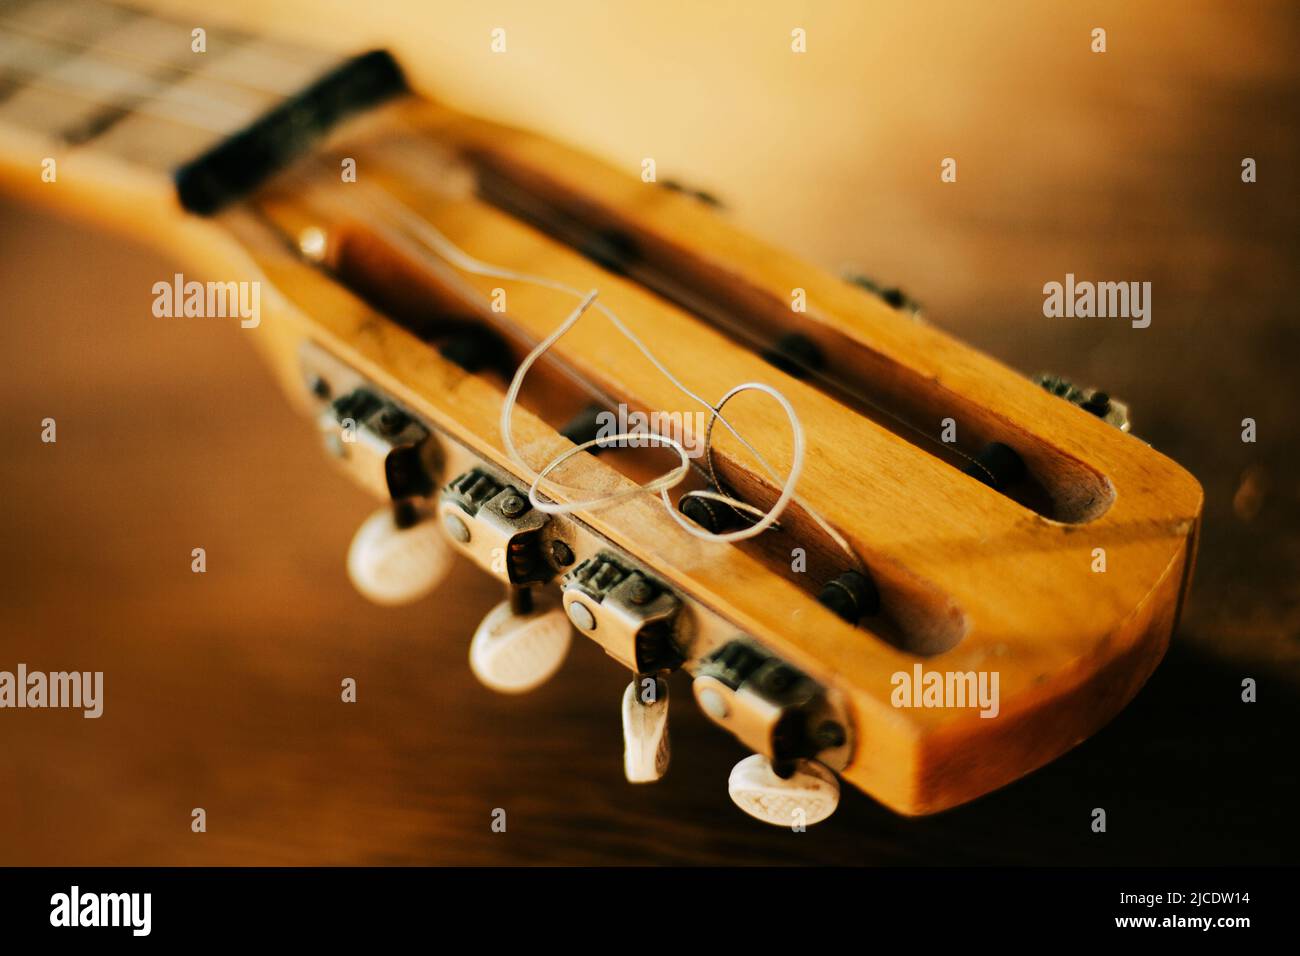 Il collo di una vecchia chitarra acustica a sei corde in legno con corde metalliche, illuminata dalla luce del sole. Lezioni di musica. Creazione. Foto Stock